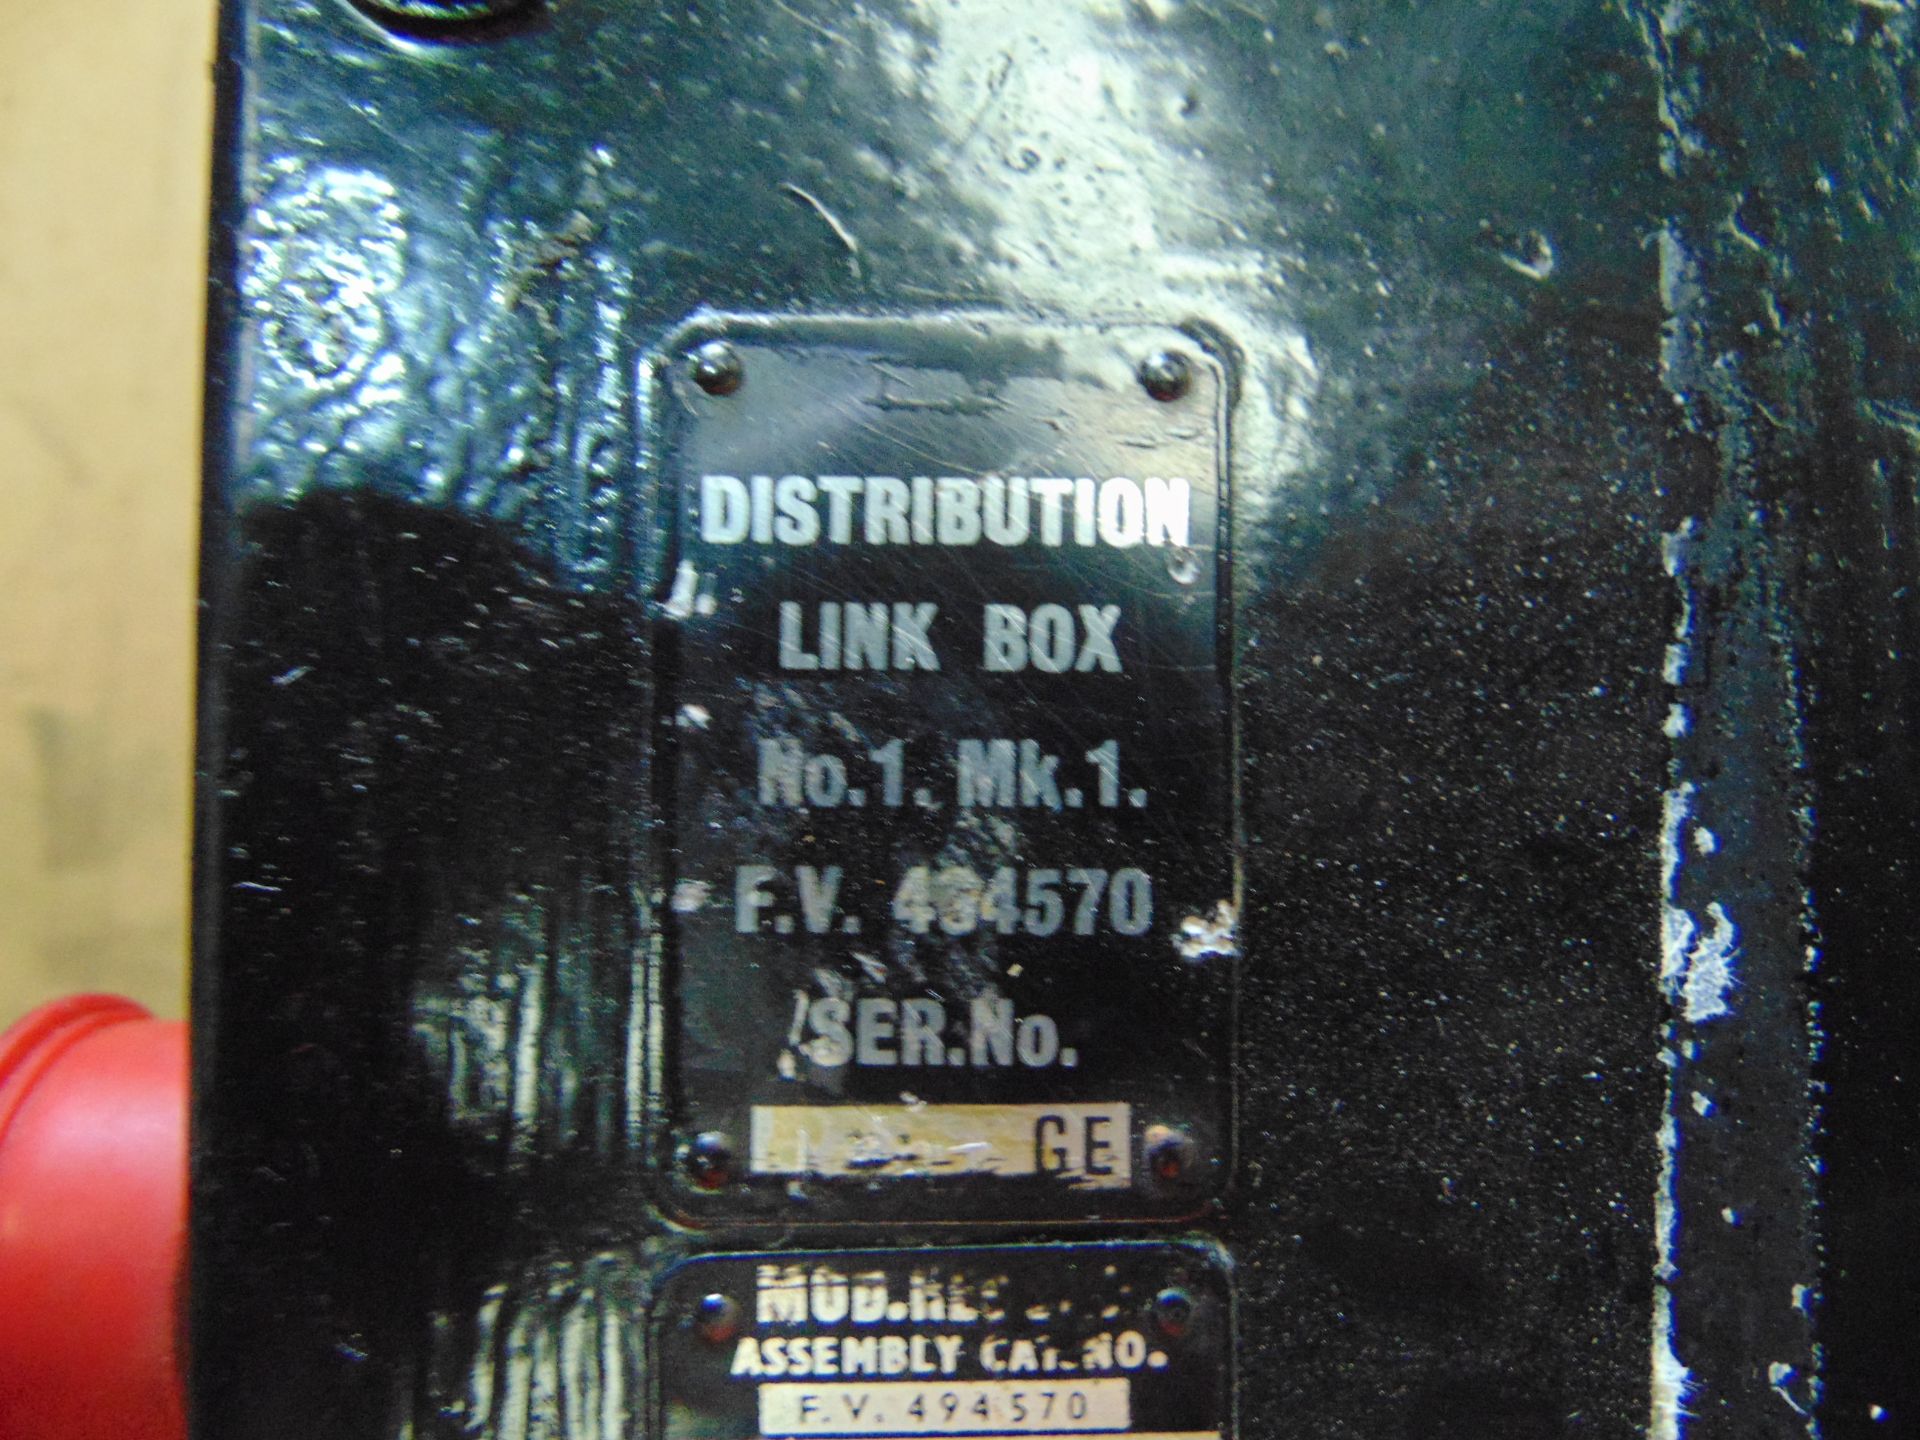 10 x FV432 Distribution Link Boxes P/no FV434570 - Image 5 of 6